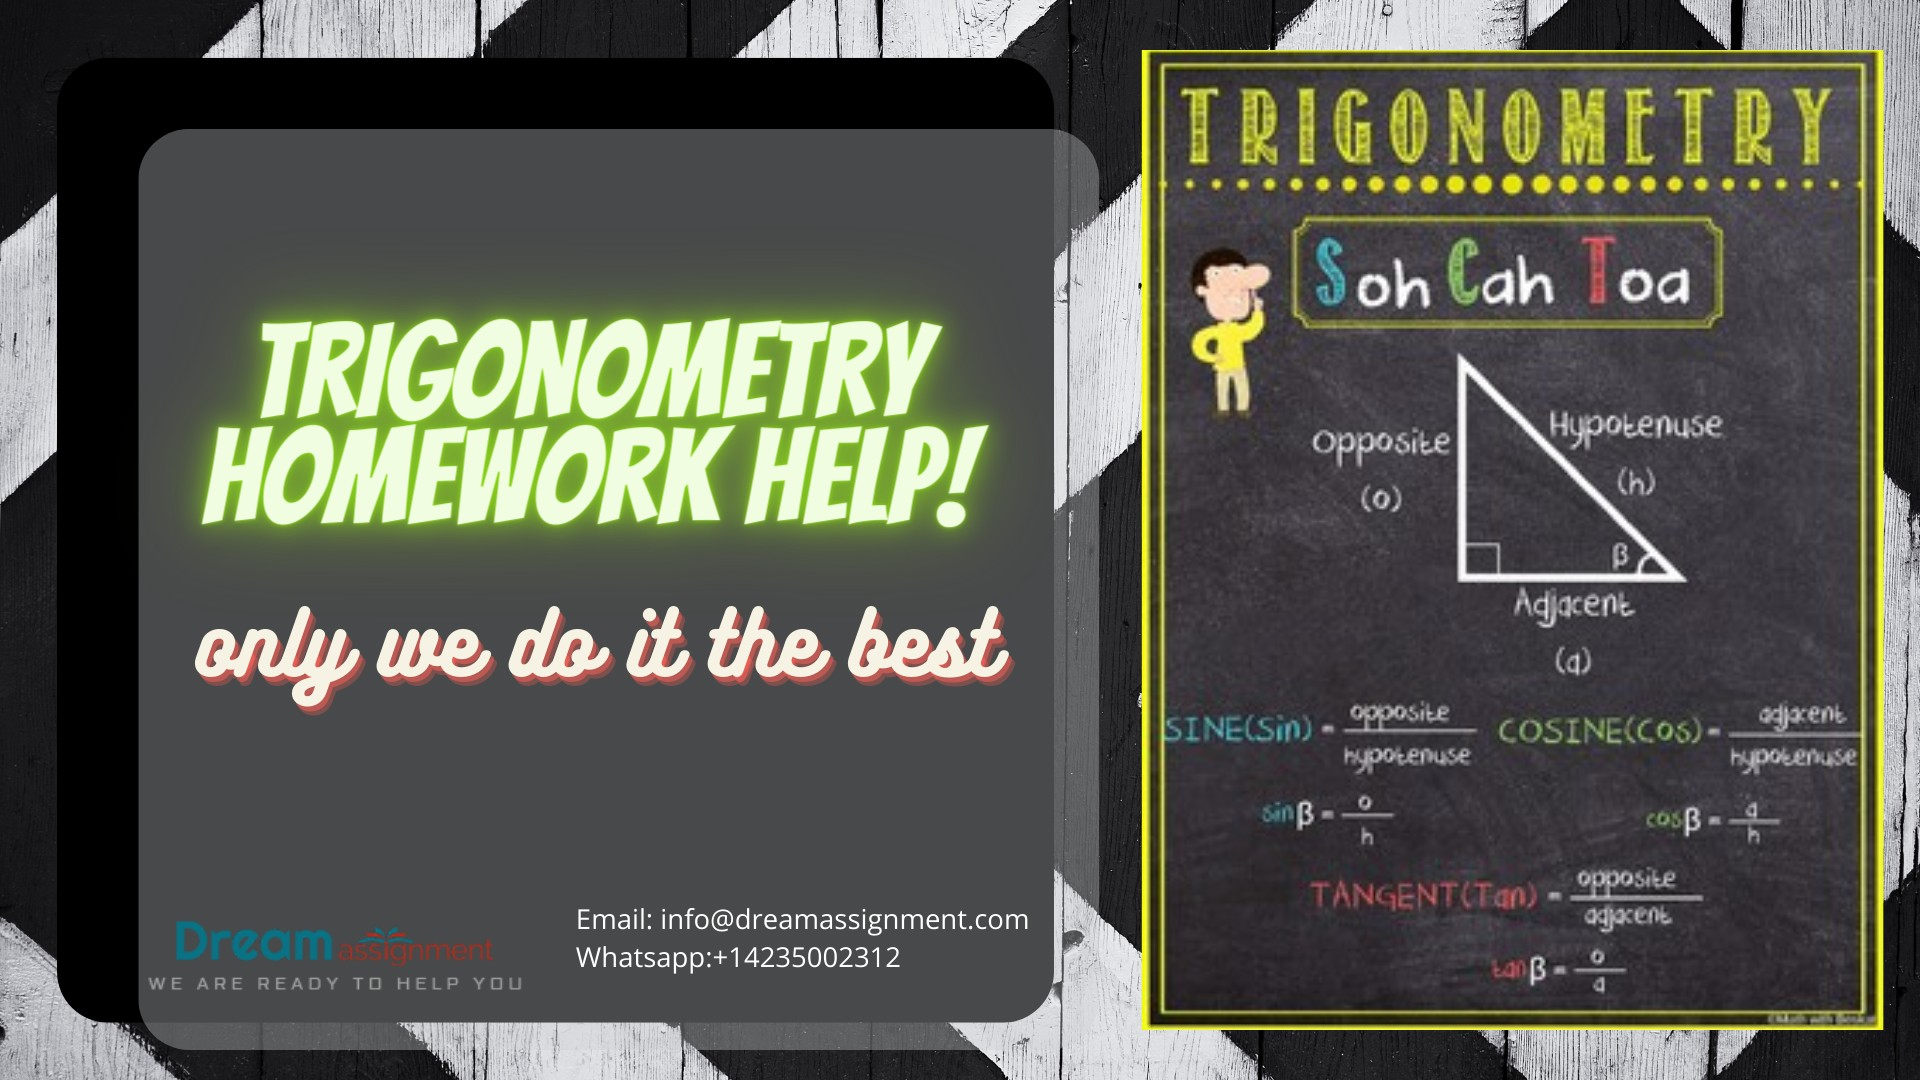 https://www.dreamassignment.com/trigonometry-homework-help